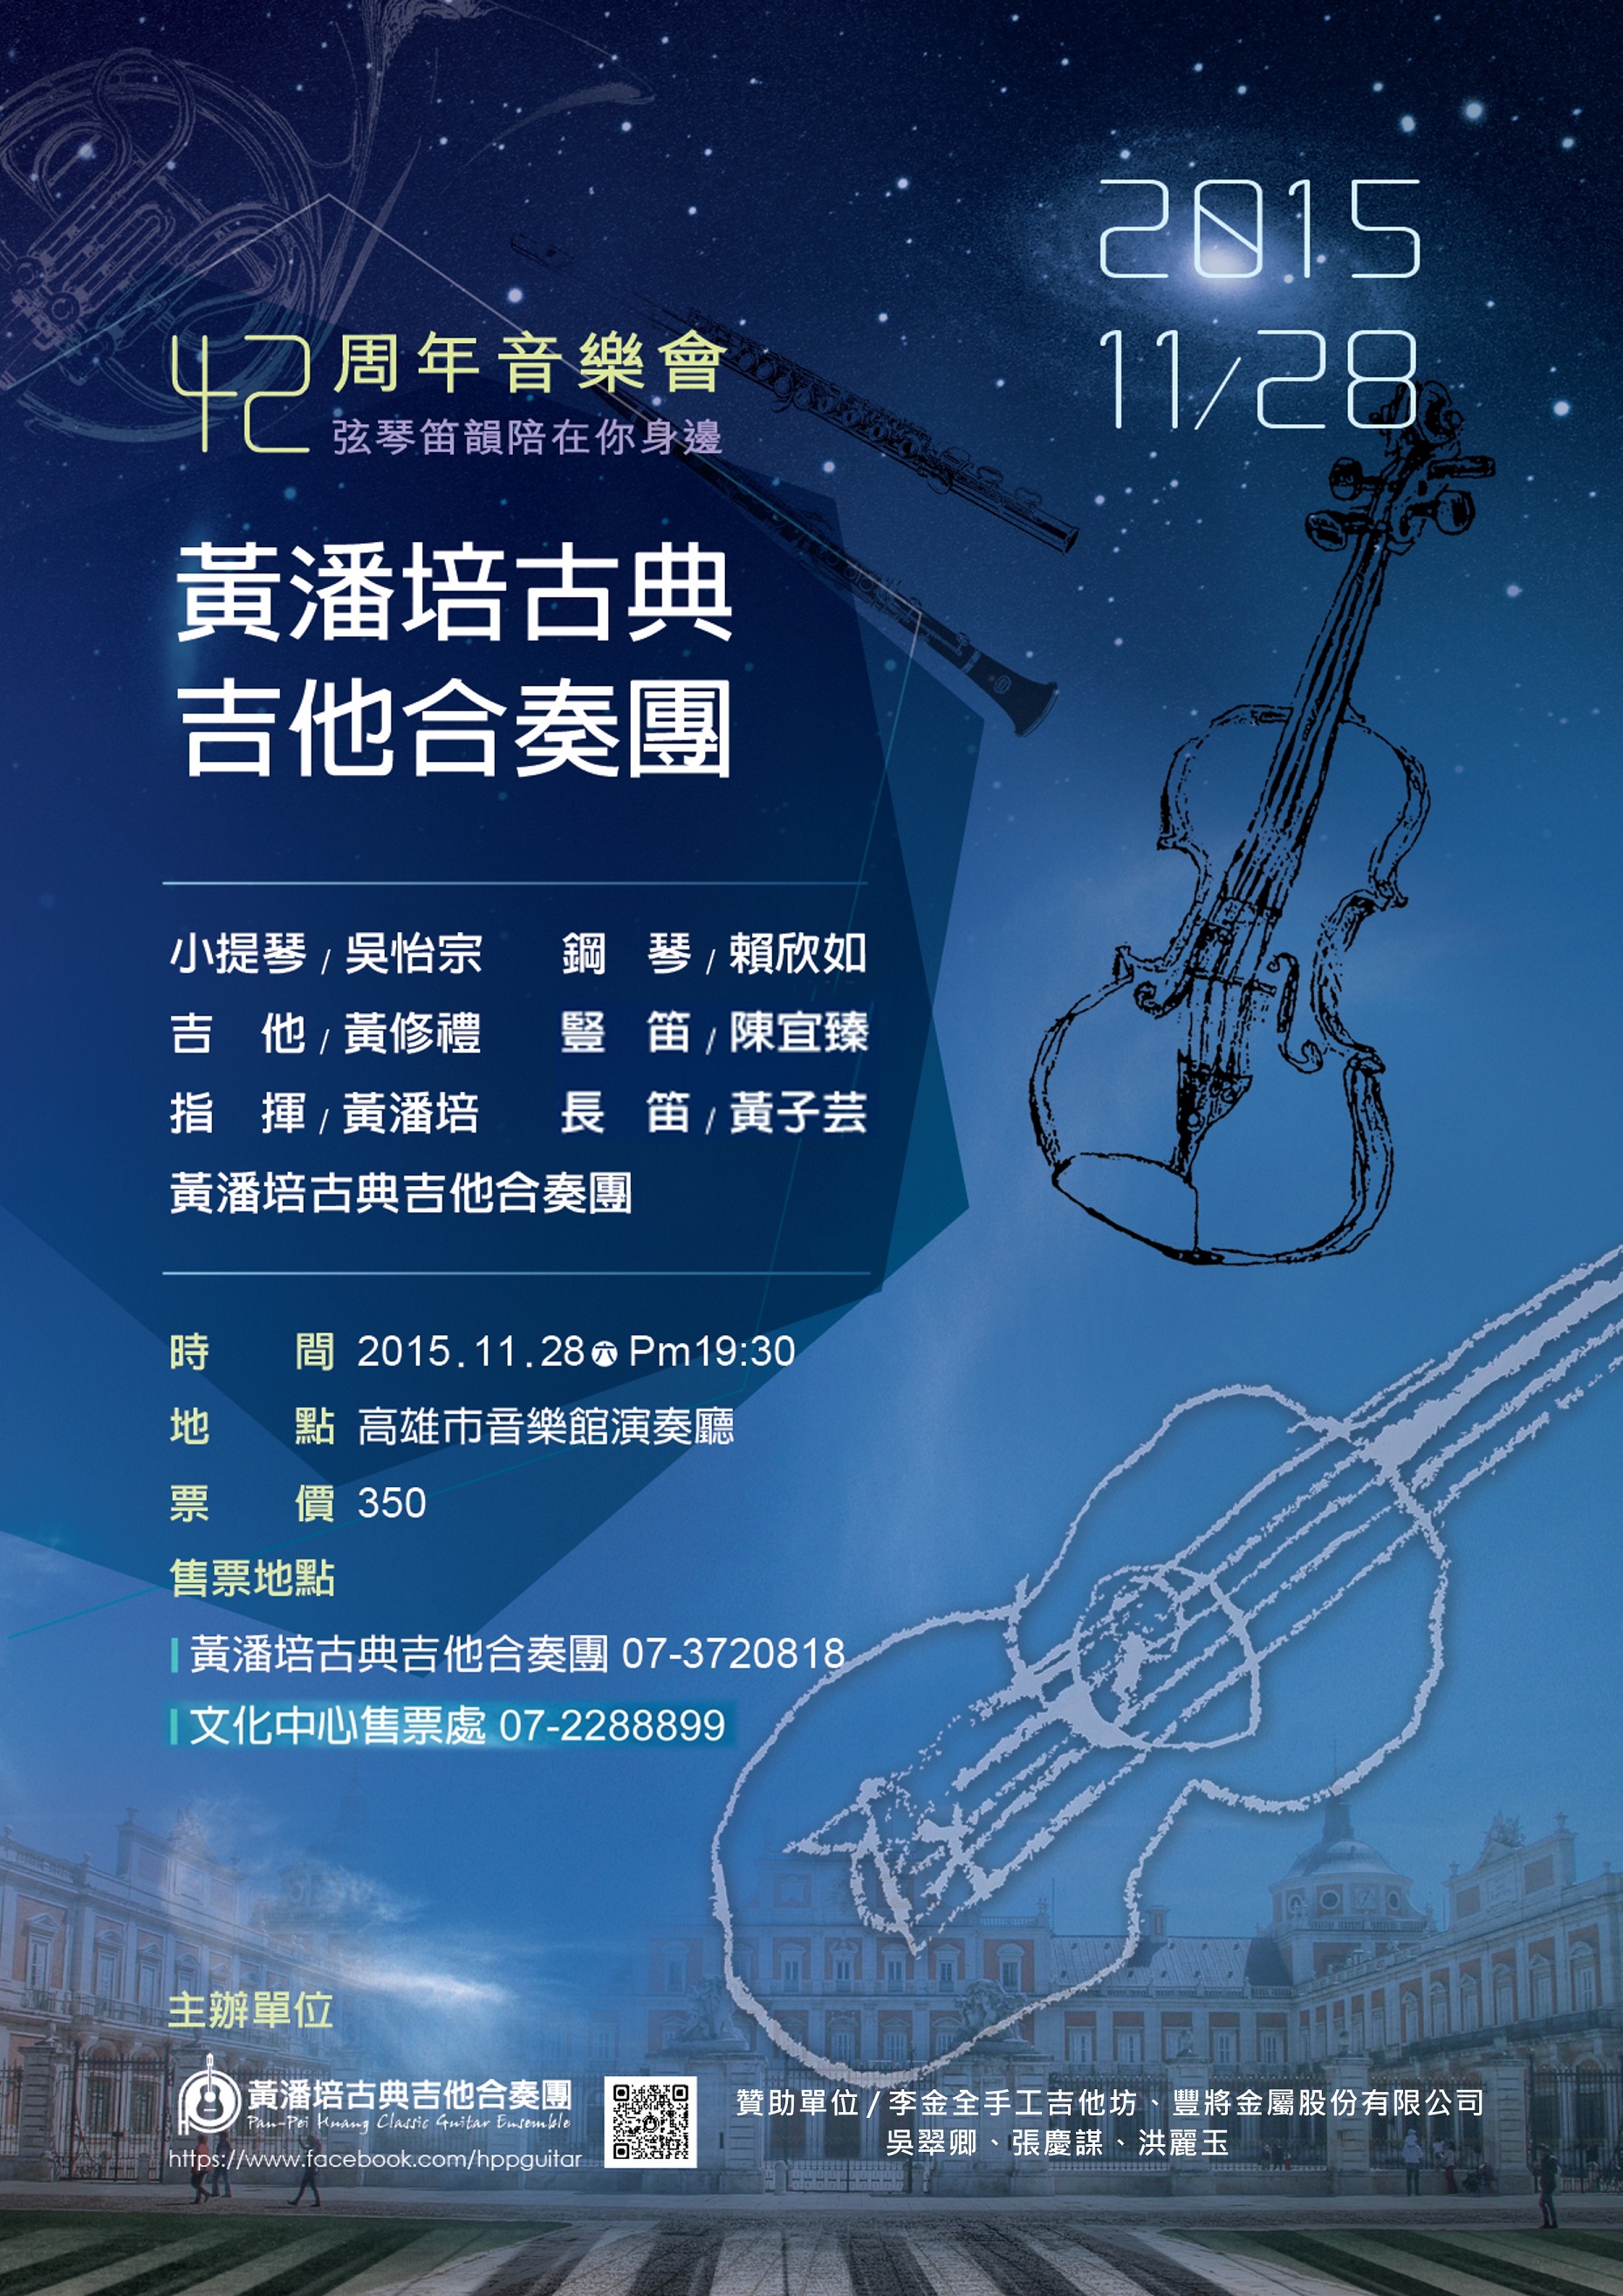 黃潘培古典吉他合奏團42周年音樂會「弦情笛韻 陪在你身邊」